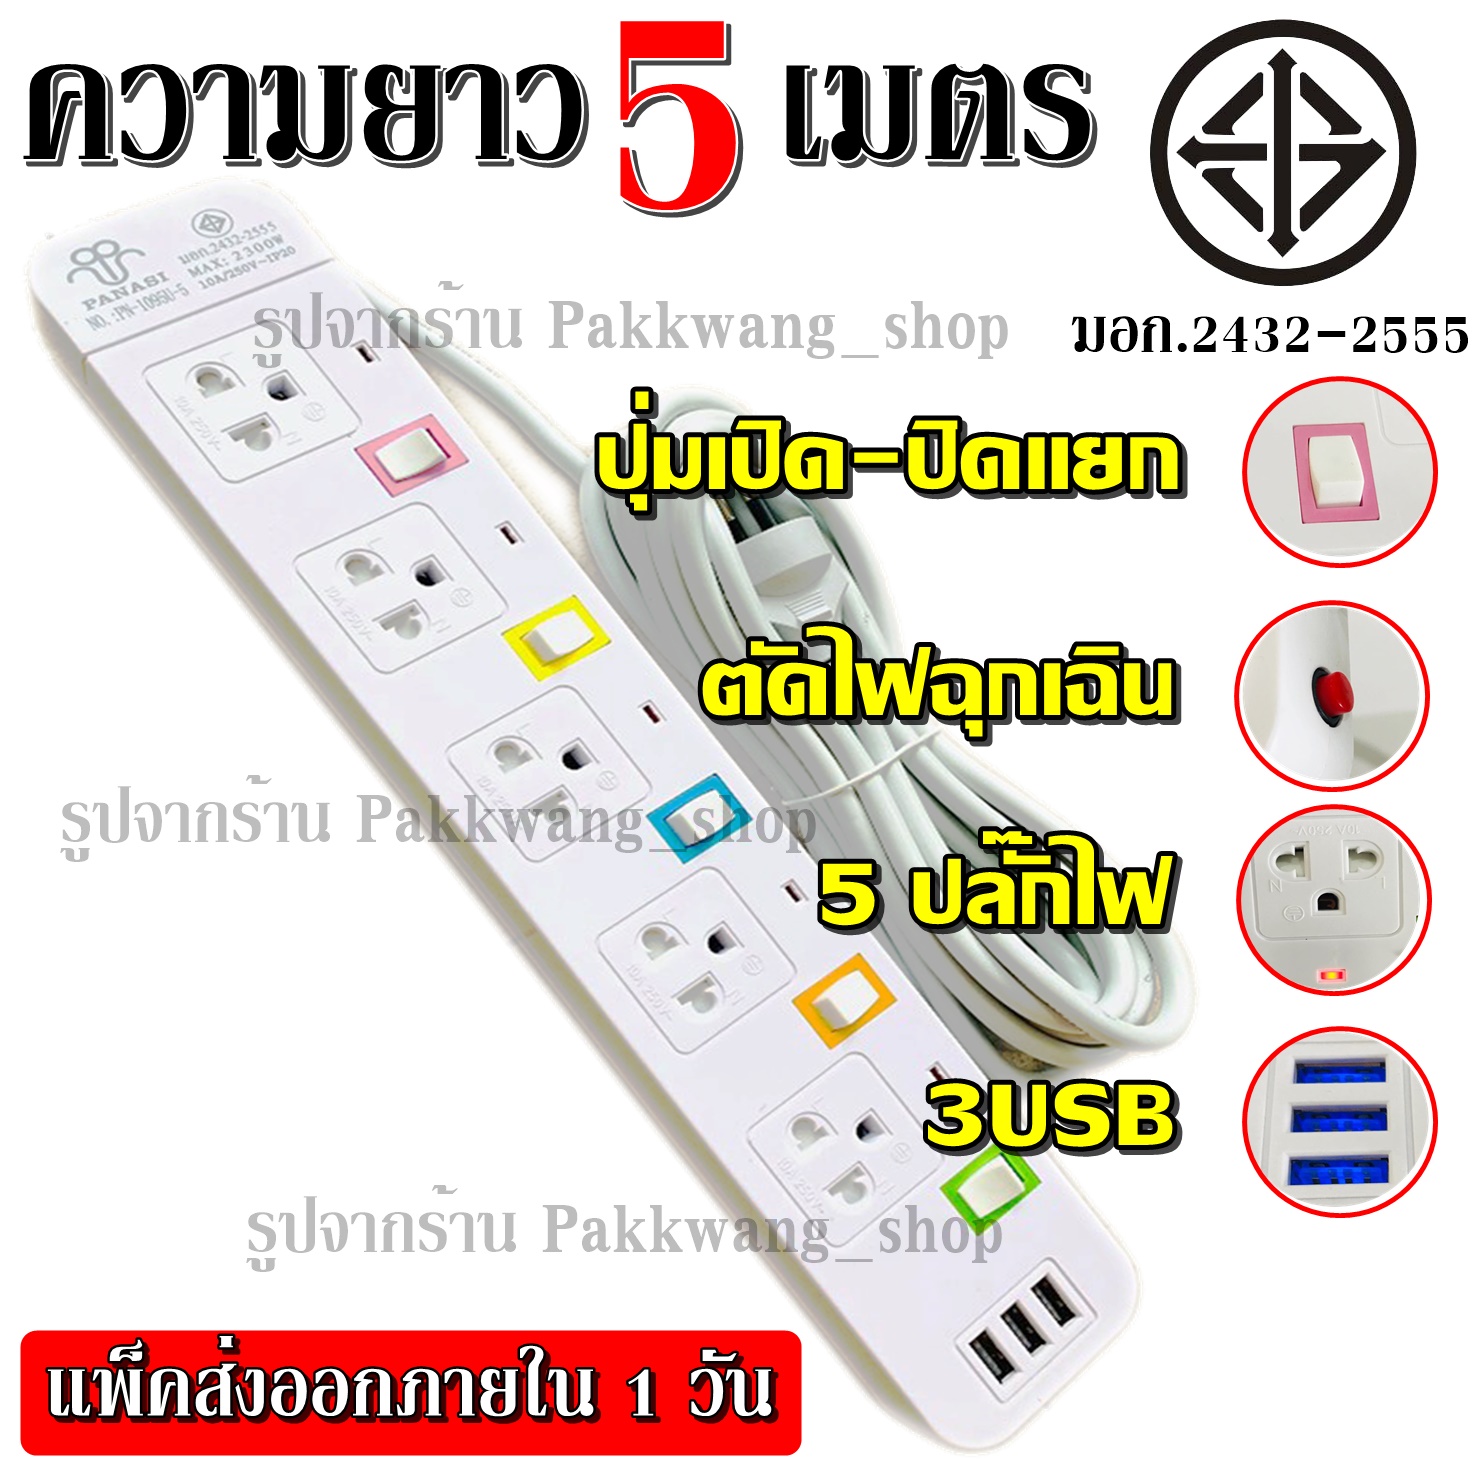 Plug 8 Shop พร้อมส่ง!!! ปลั๊กไฟ มอก.2432-2555 ((4 ช่อง 3 USB)) ปลั๊ก 2300w PANASI รุ่น PN-1094U PN-1093U PN-1095U วัสดุแข็งแรง สายไฟหนาแข็ง +เลือกความยาว+ 3เมตร 5เมตร